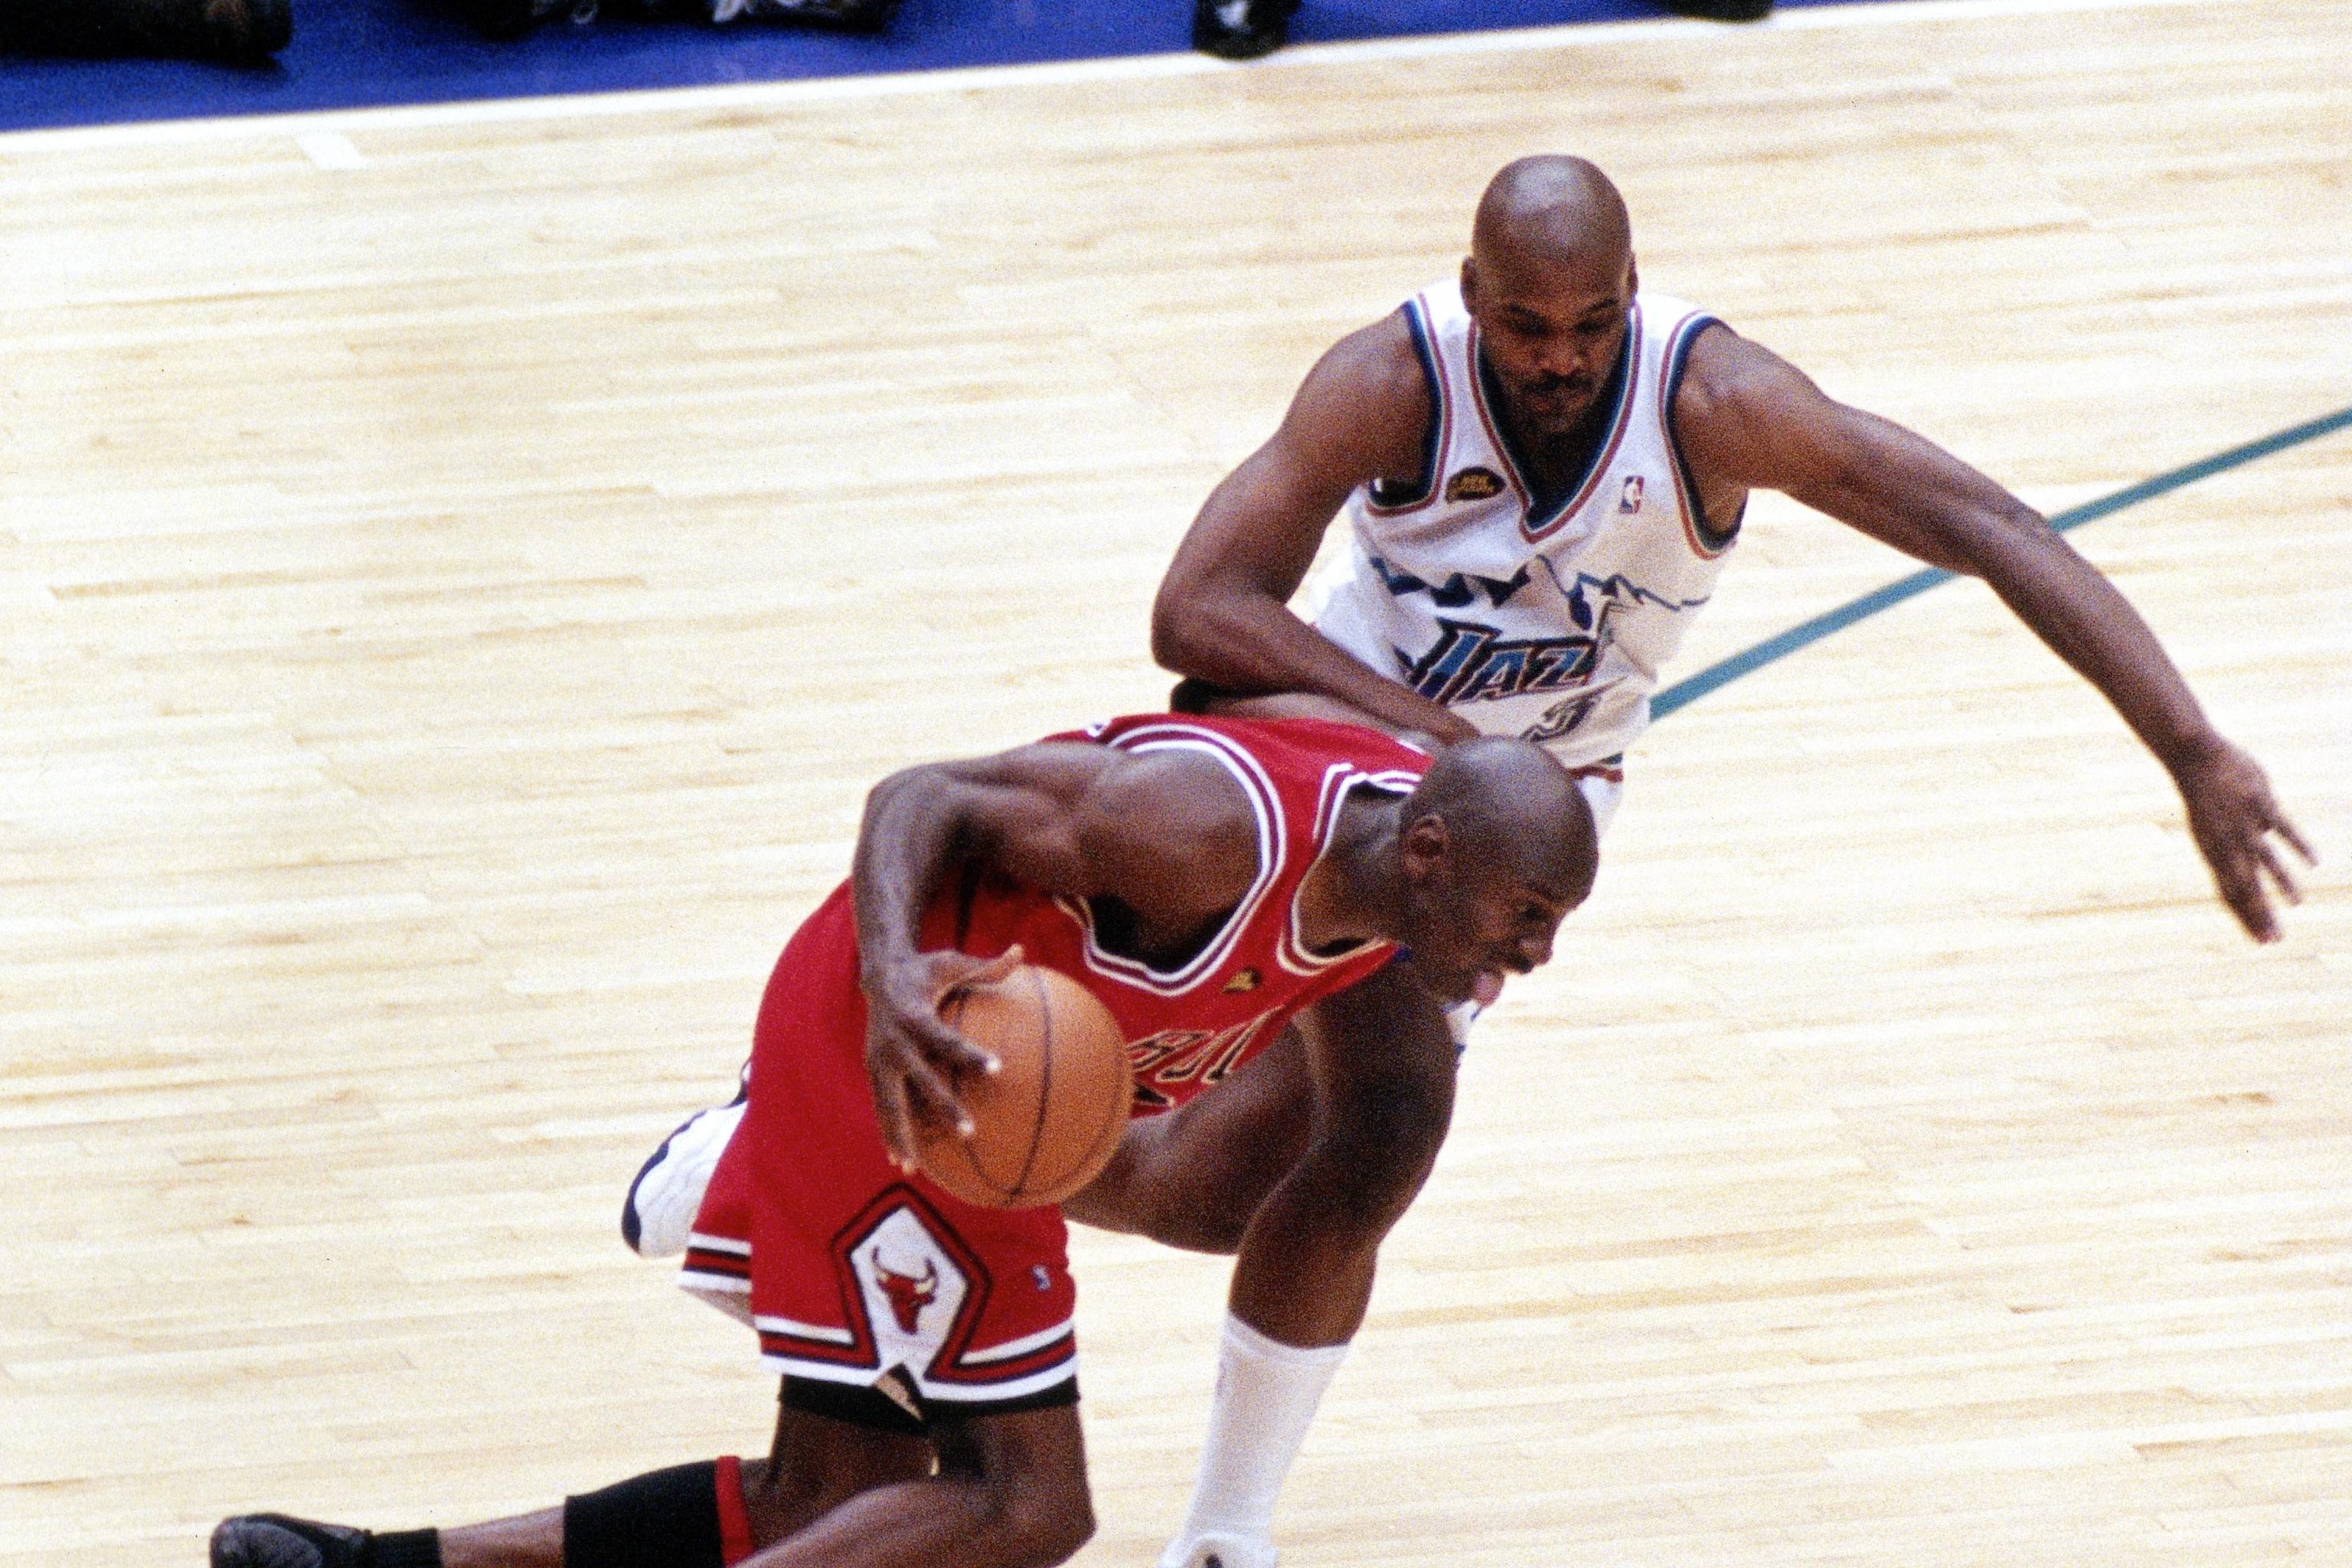 Michael Jordan layup (1998)